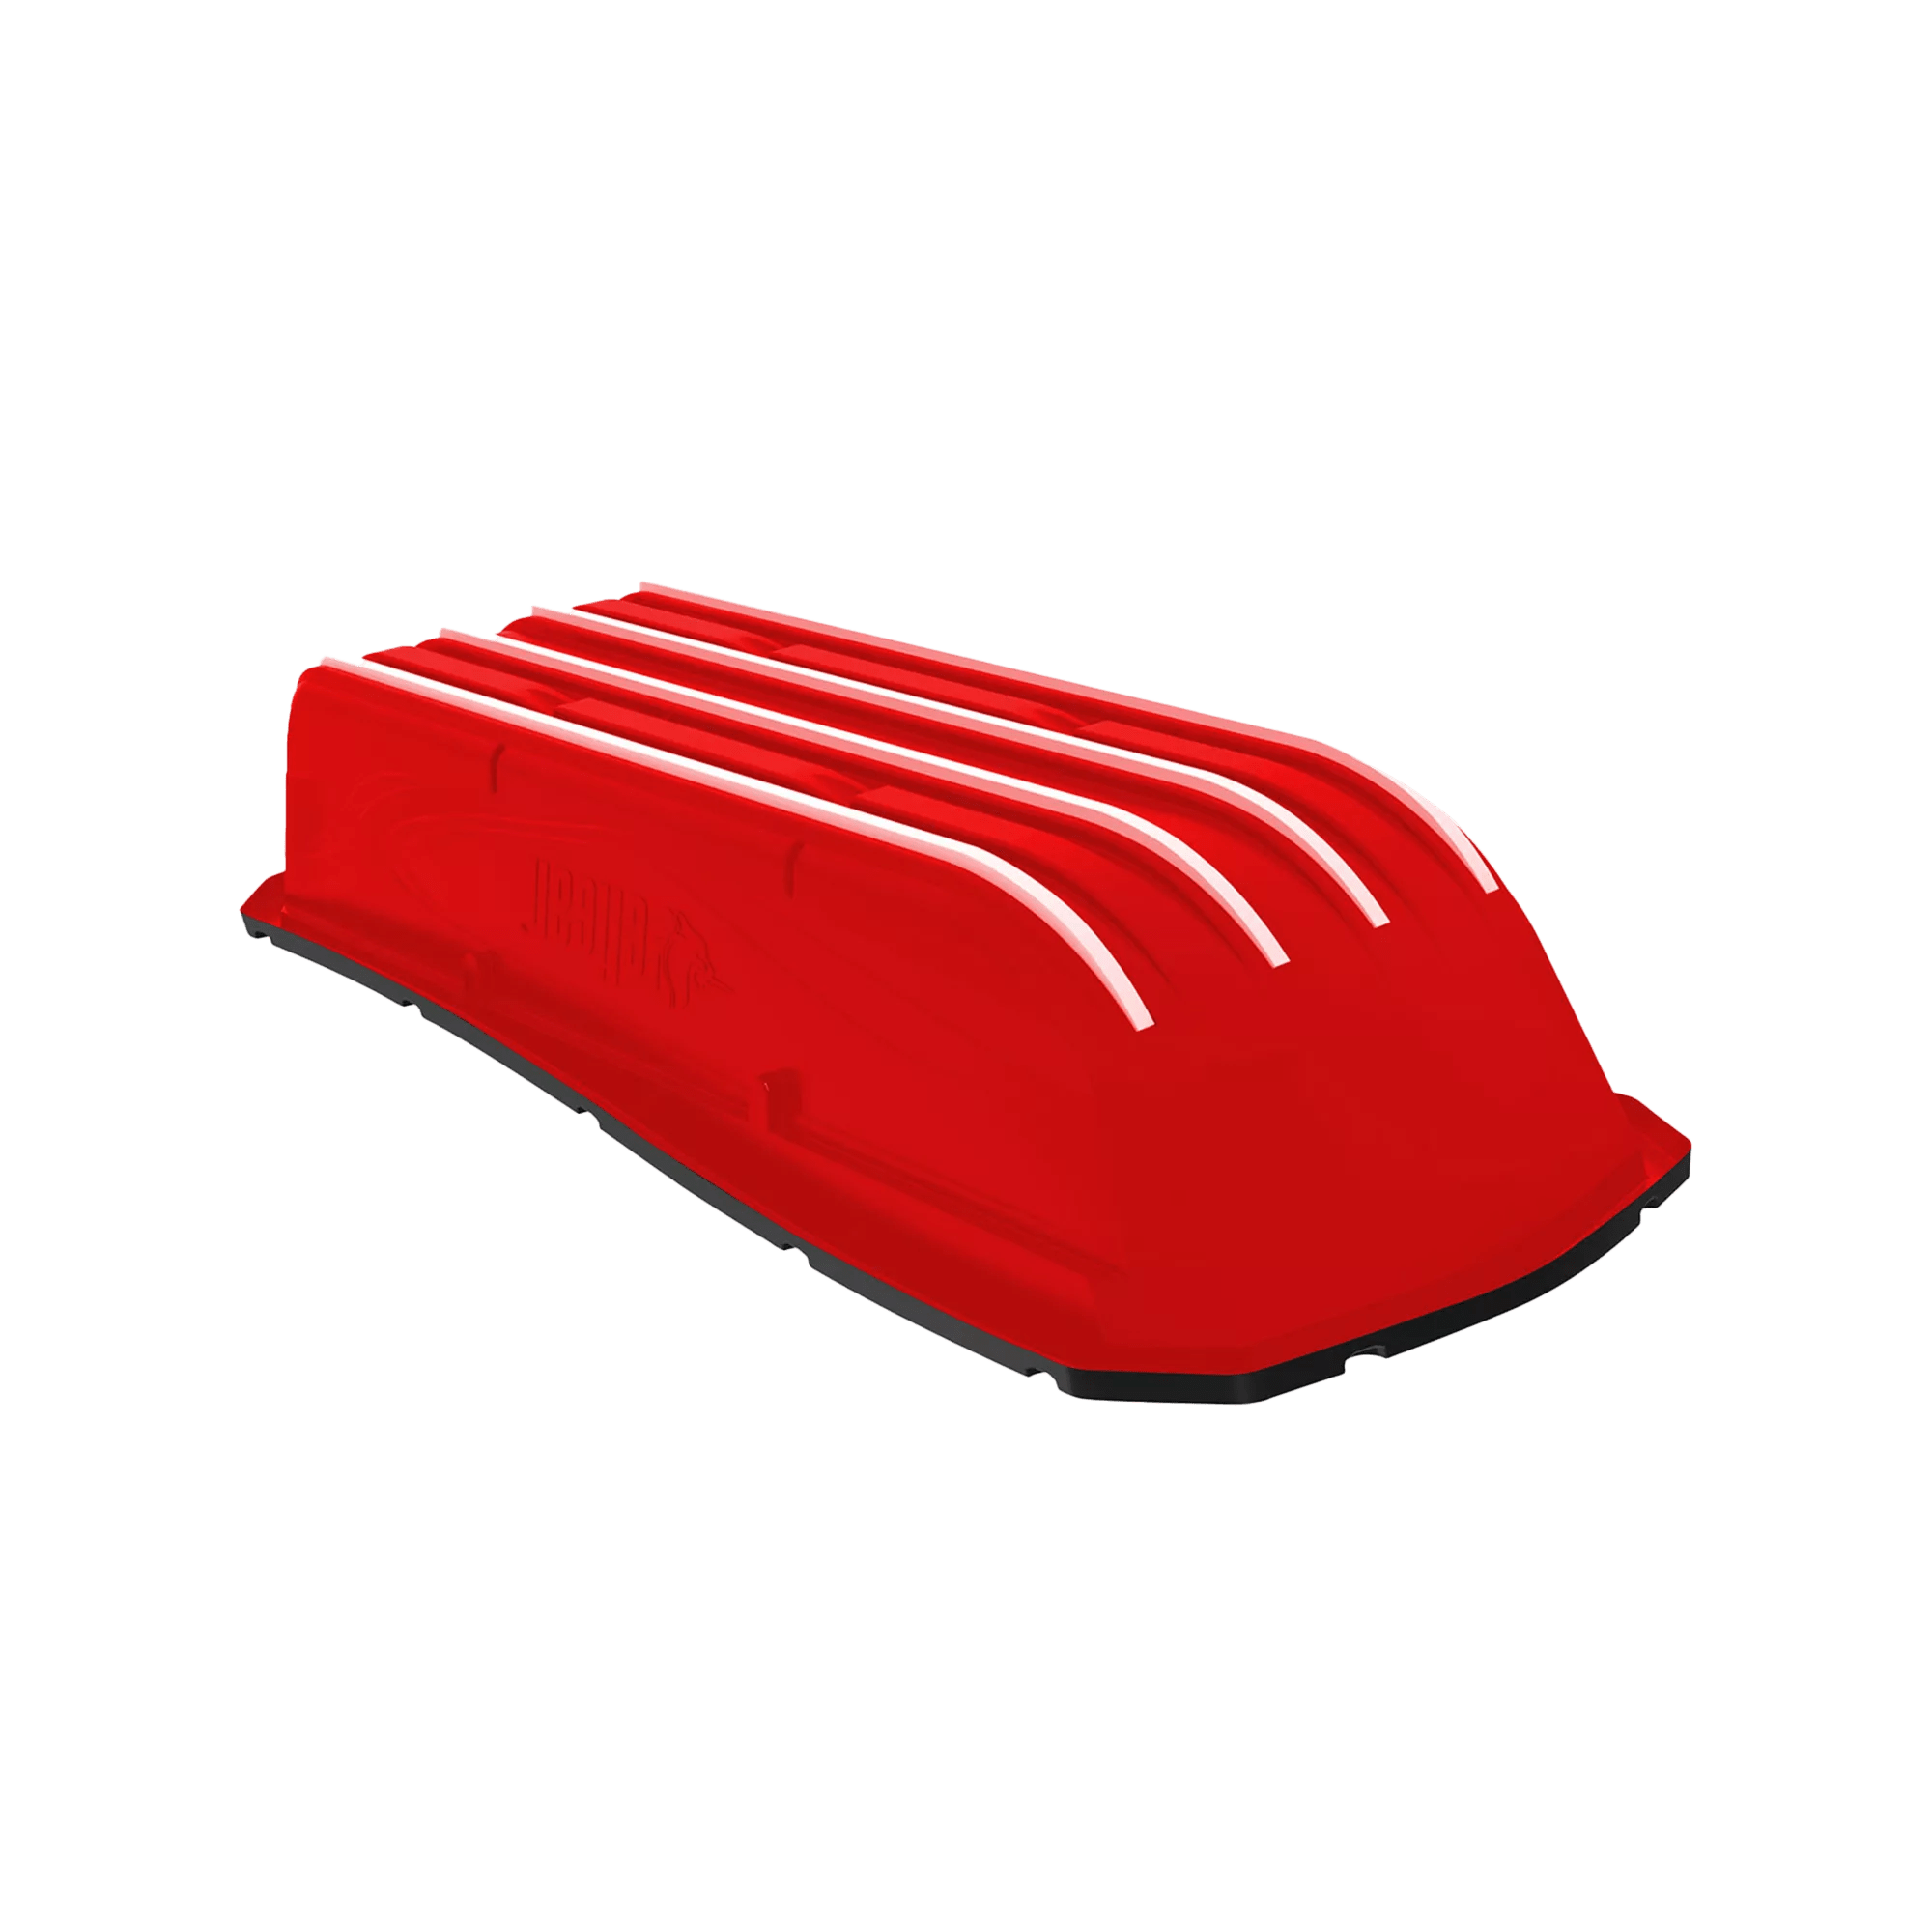 PELICAN - Ensemble de patins RAM-X pour la luge utilitaire Trek Sport 68 - Red - PS2163-00 - ISO 